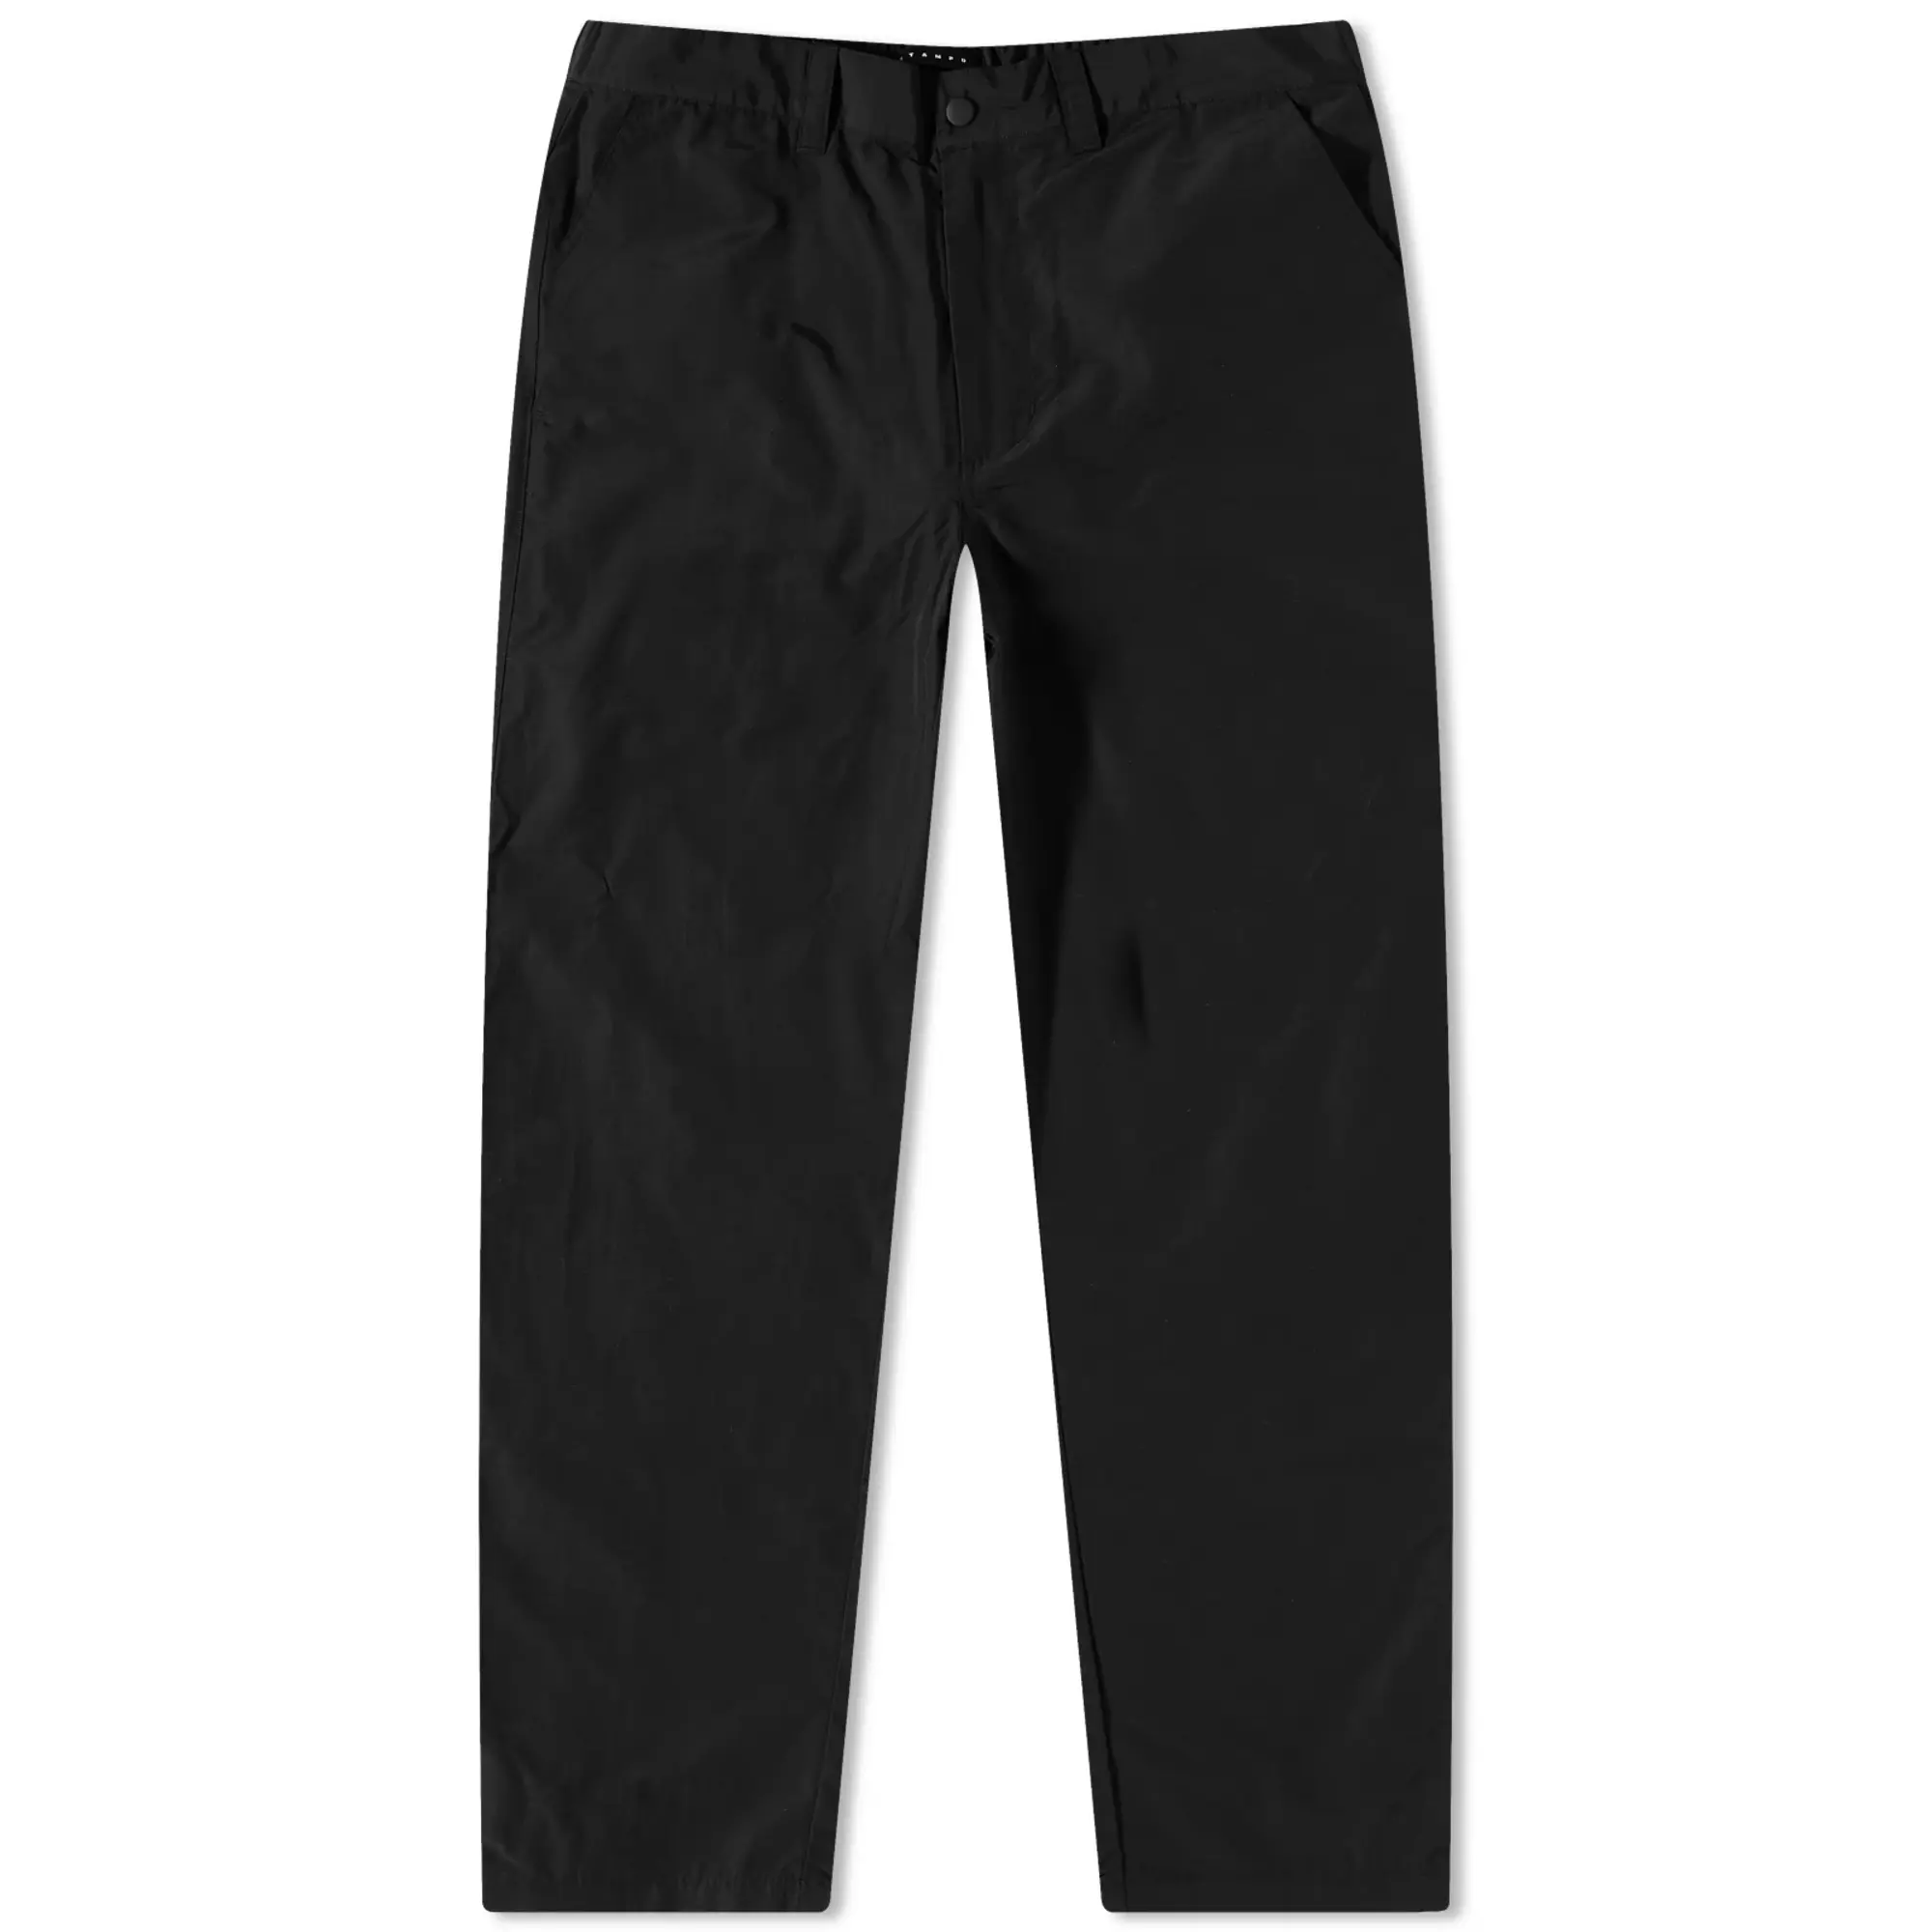 Stampd Men's Nylon Condition Pants Black